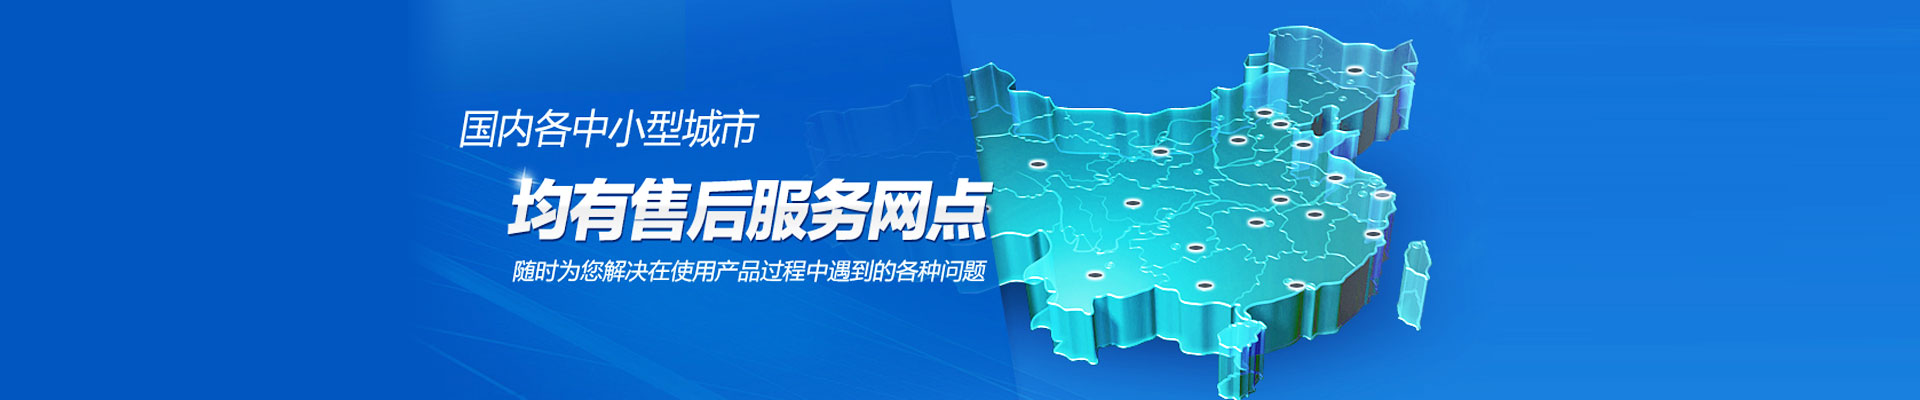 深圳市杰冠超声波科技有限公司